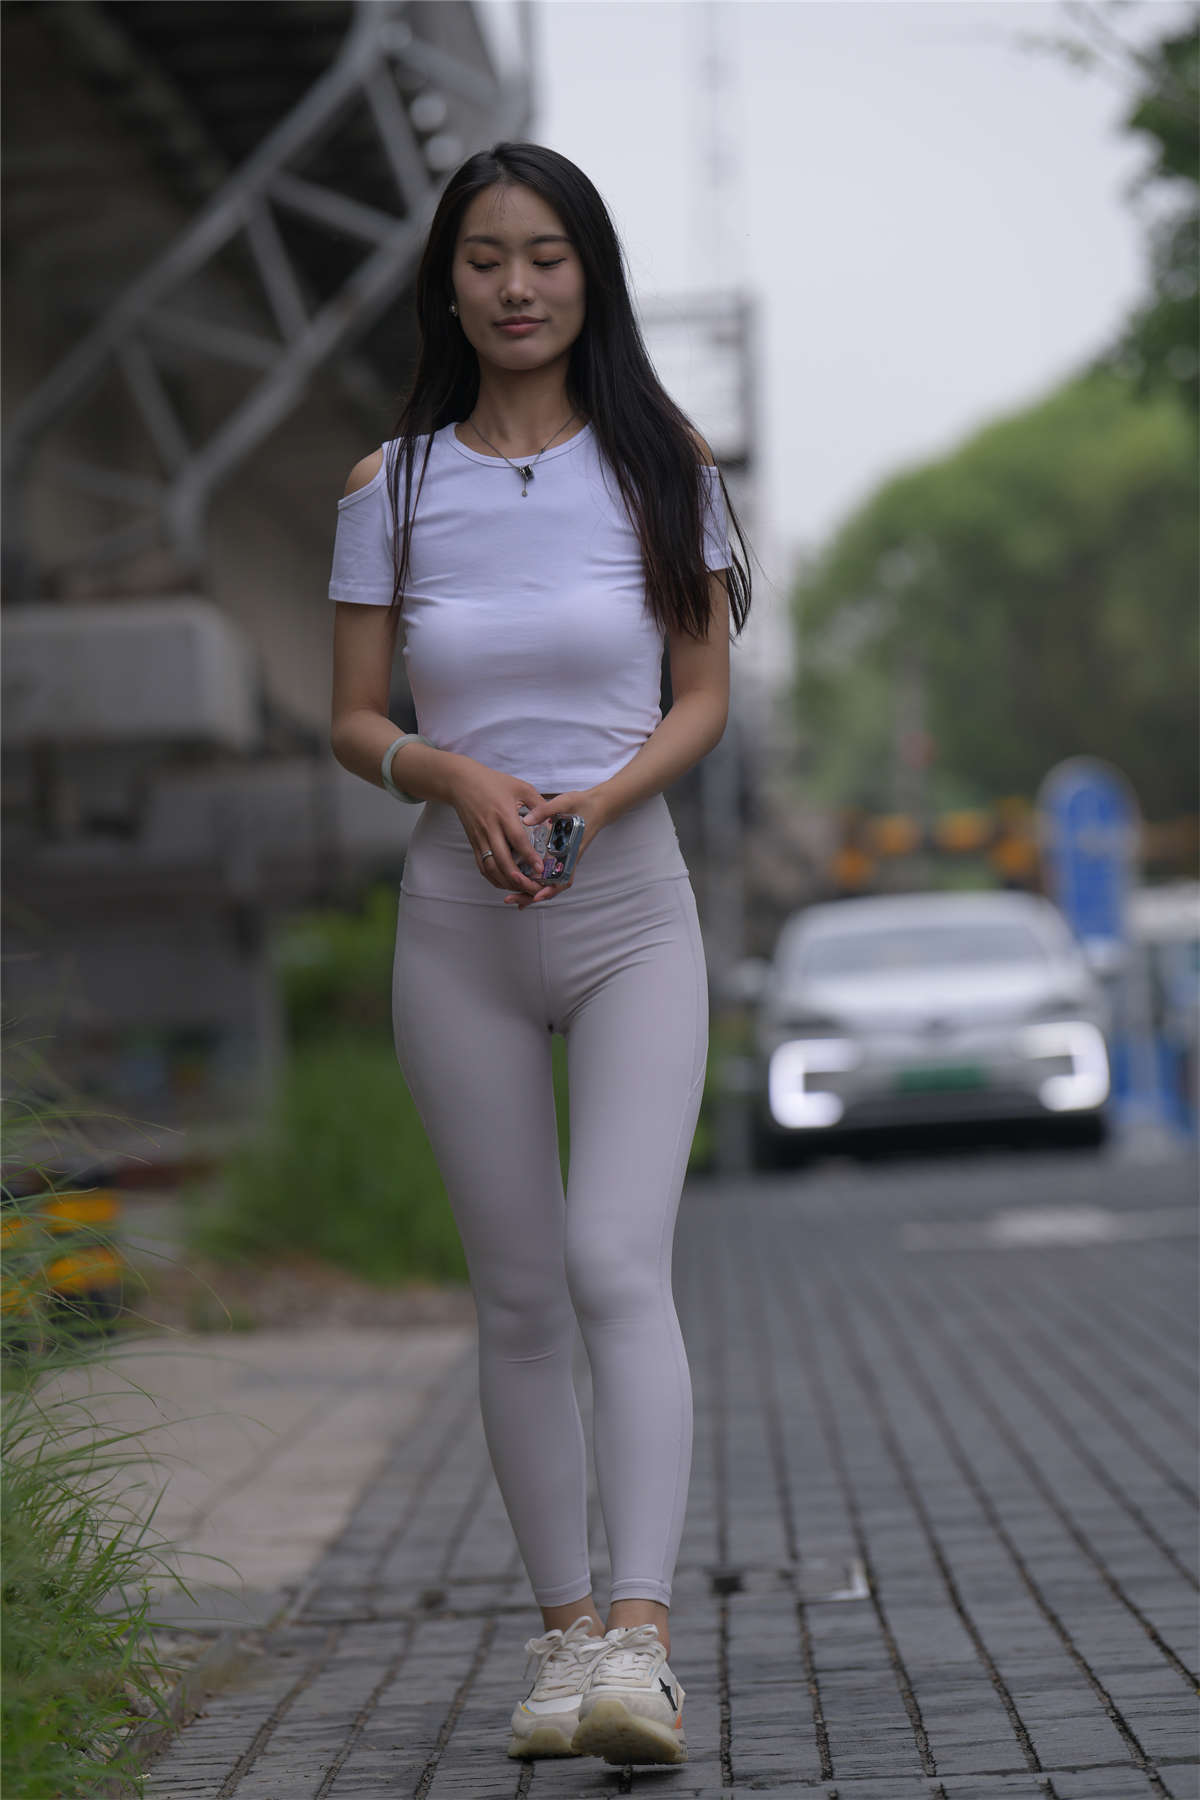 [魔镜原创摄影] 一始街拍作品 白色瑜伽裤美女[537P    ]插图